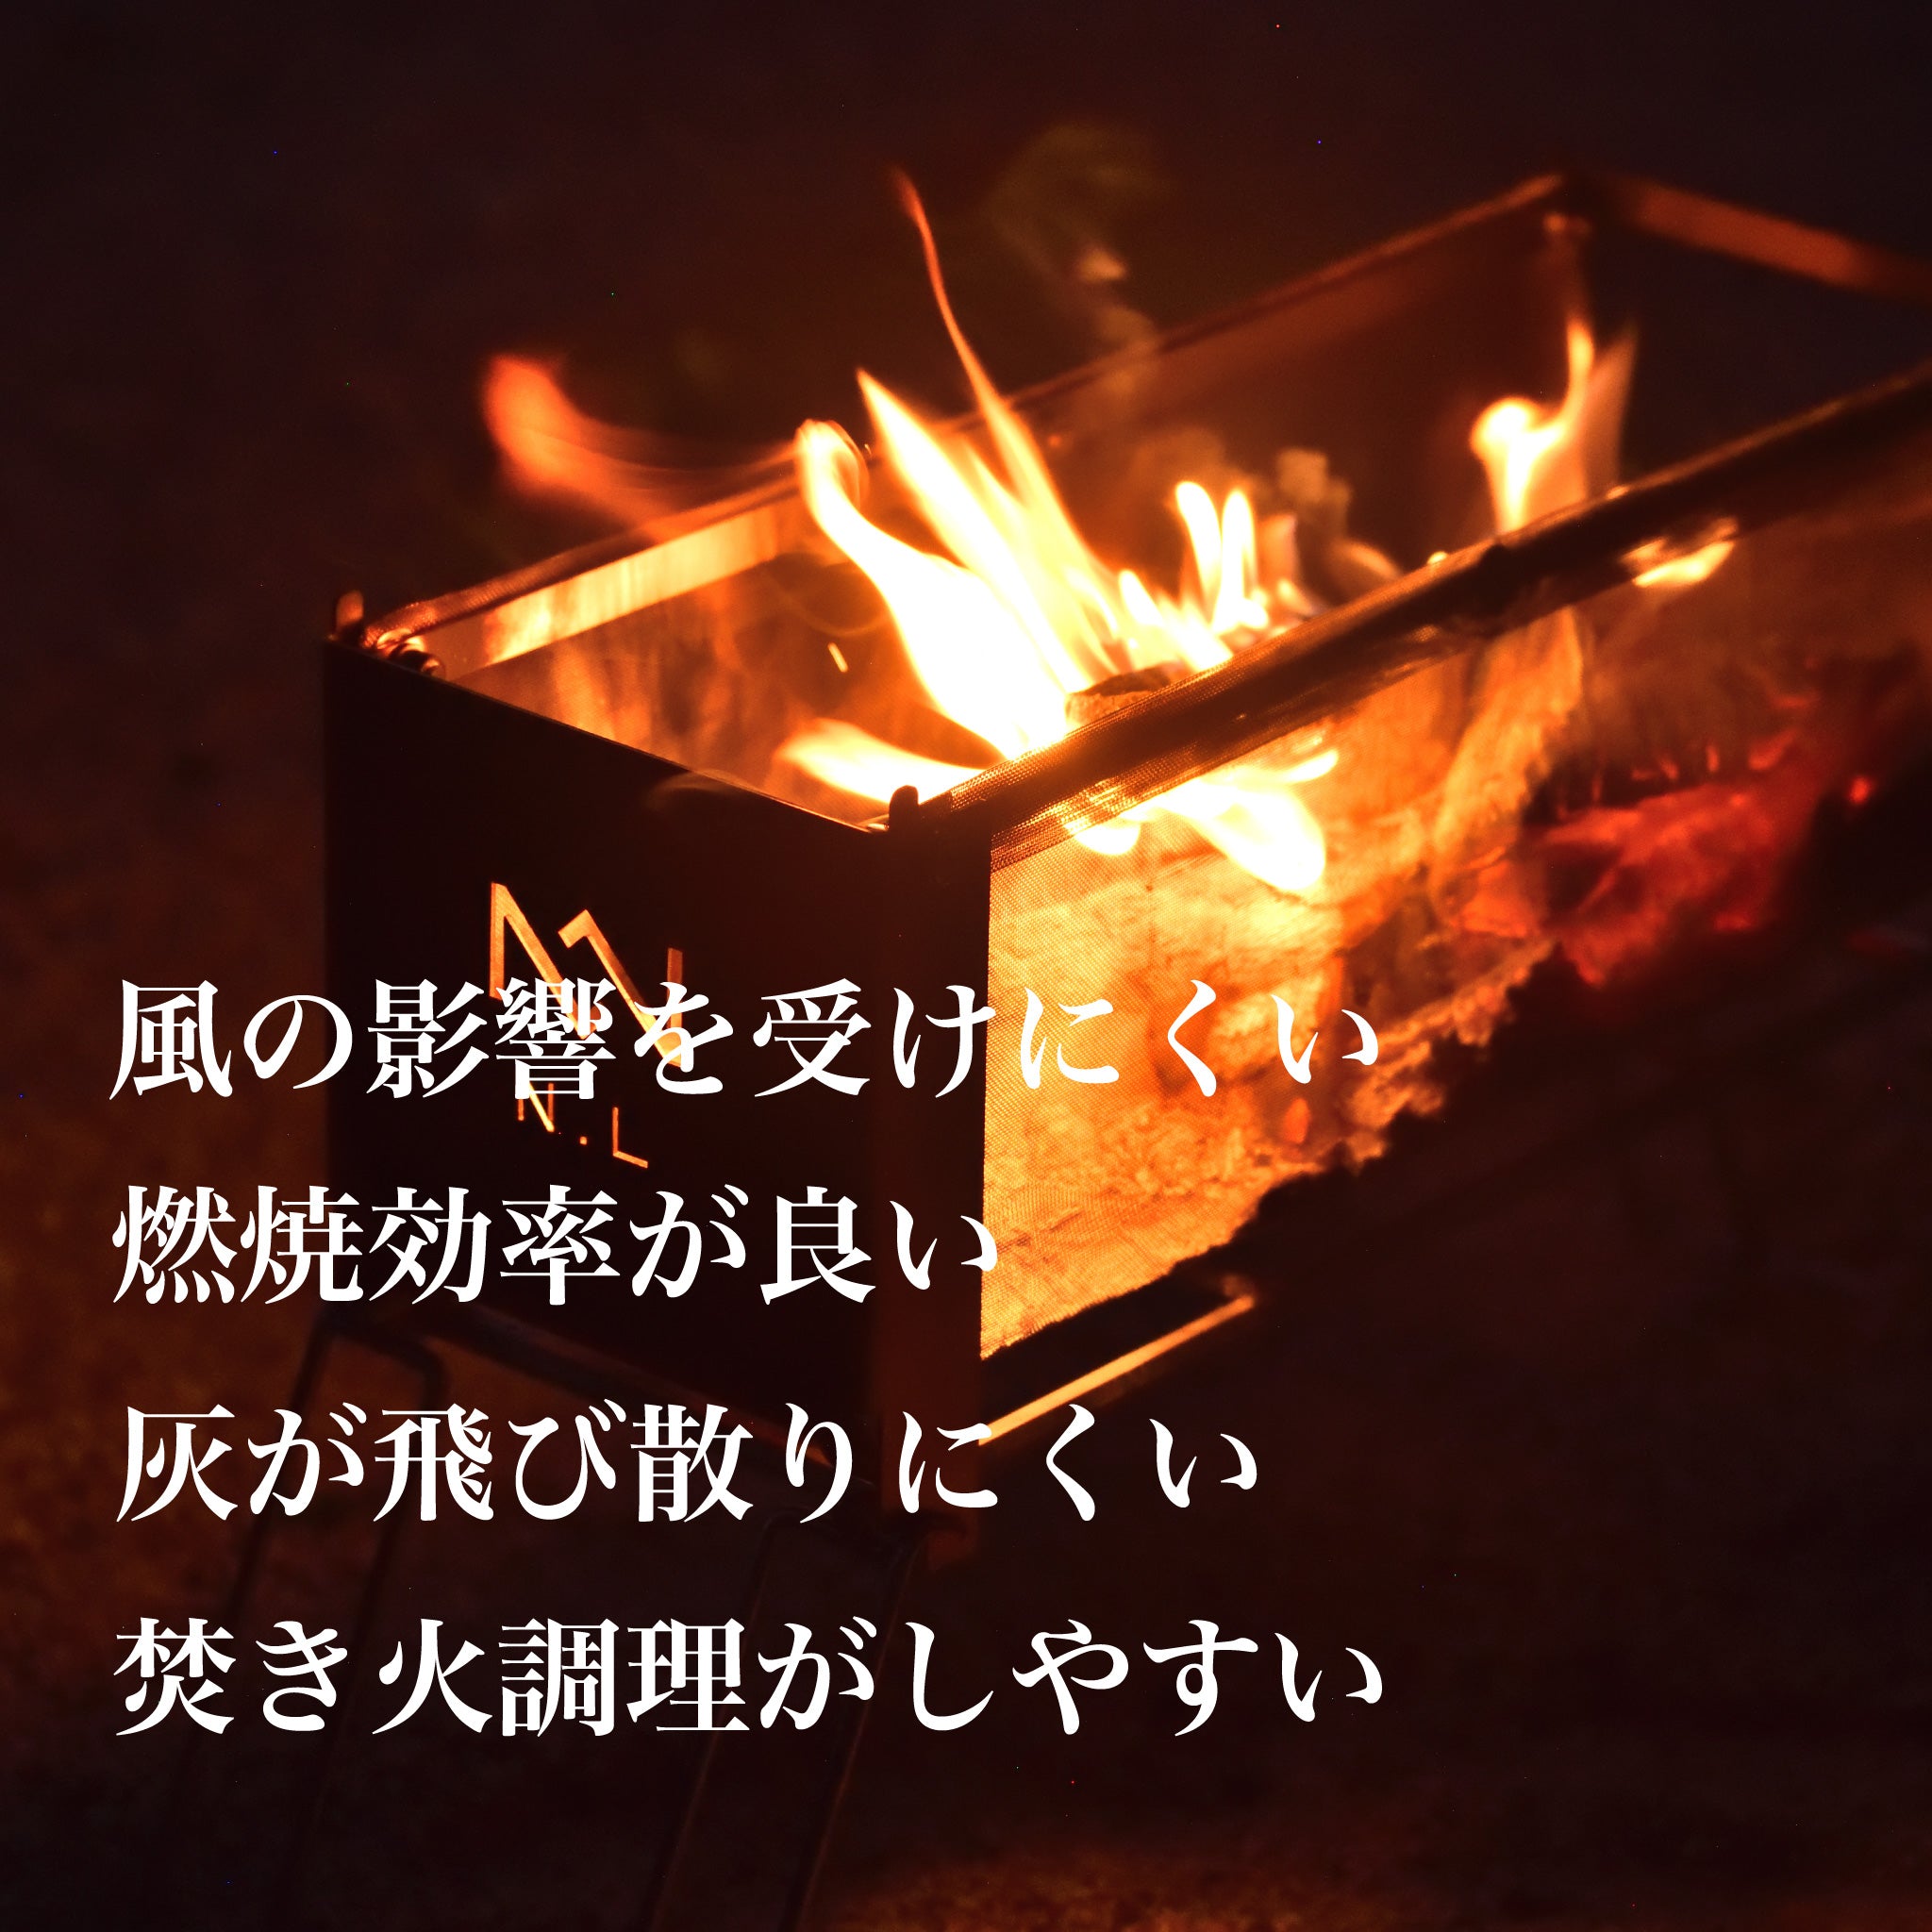 もっと焚き火が好きになる 【焚き火台】 ヨコナガメッシュタキビダイ - OTONA-MONO